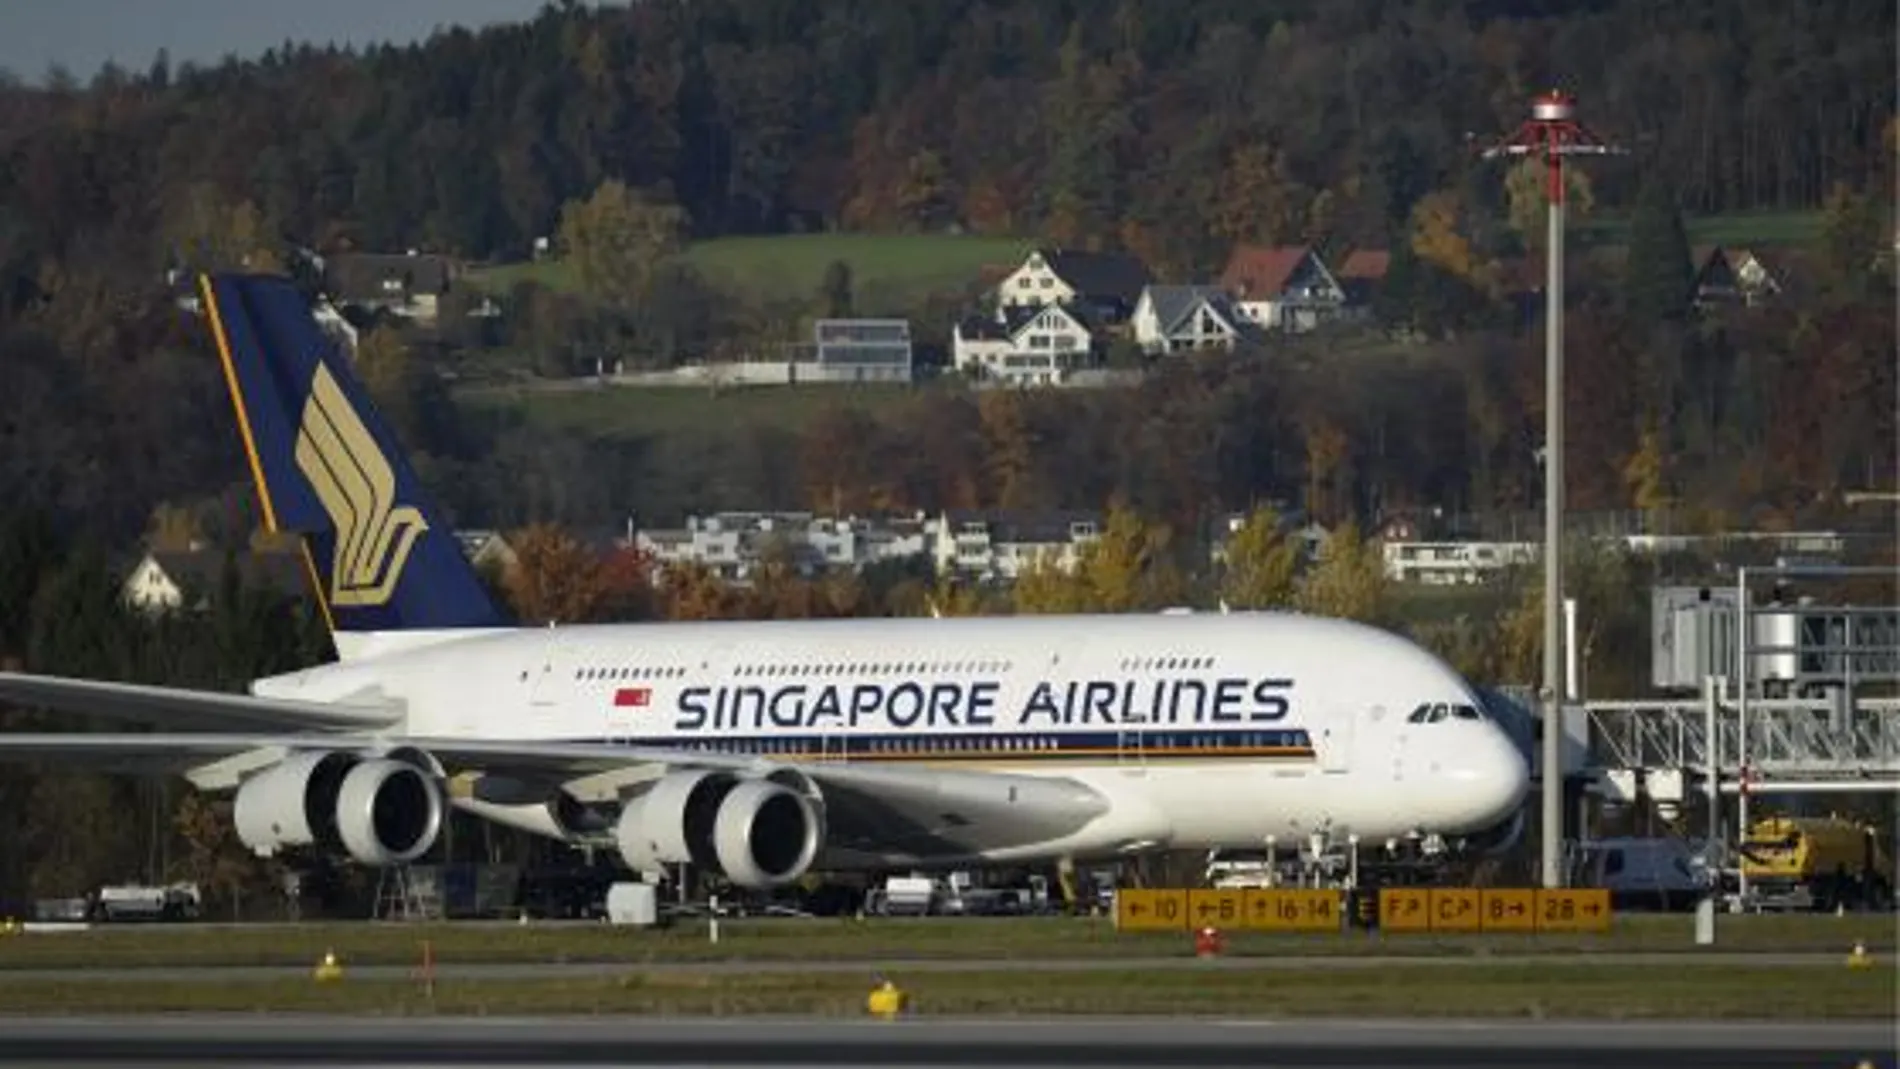 Un avión Airbus A-380 de Singapore Airlines permanece en tierra en el aeropuerto de Zurich, Suiza, mientras revisan su motor